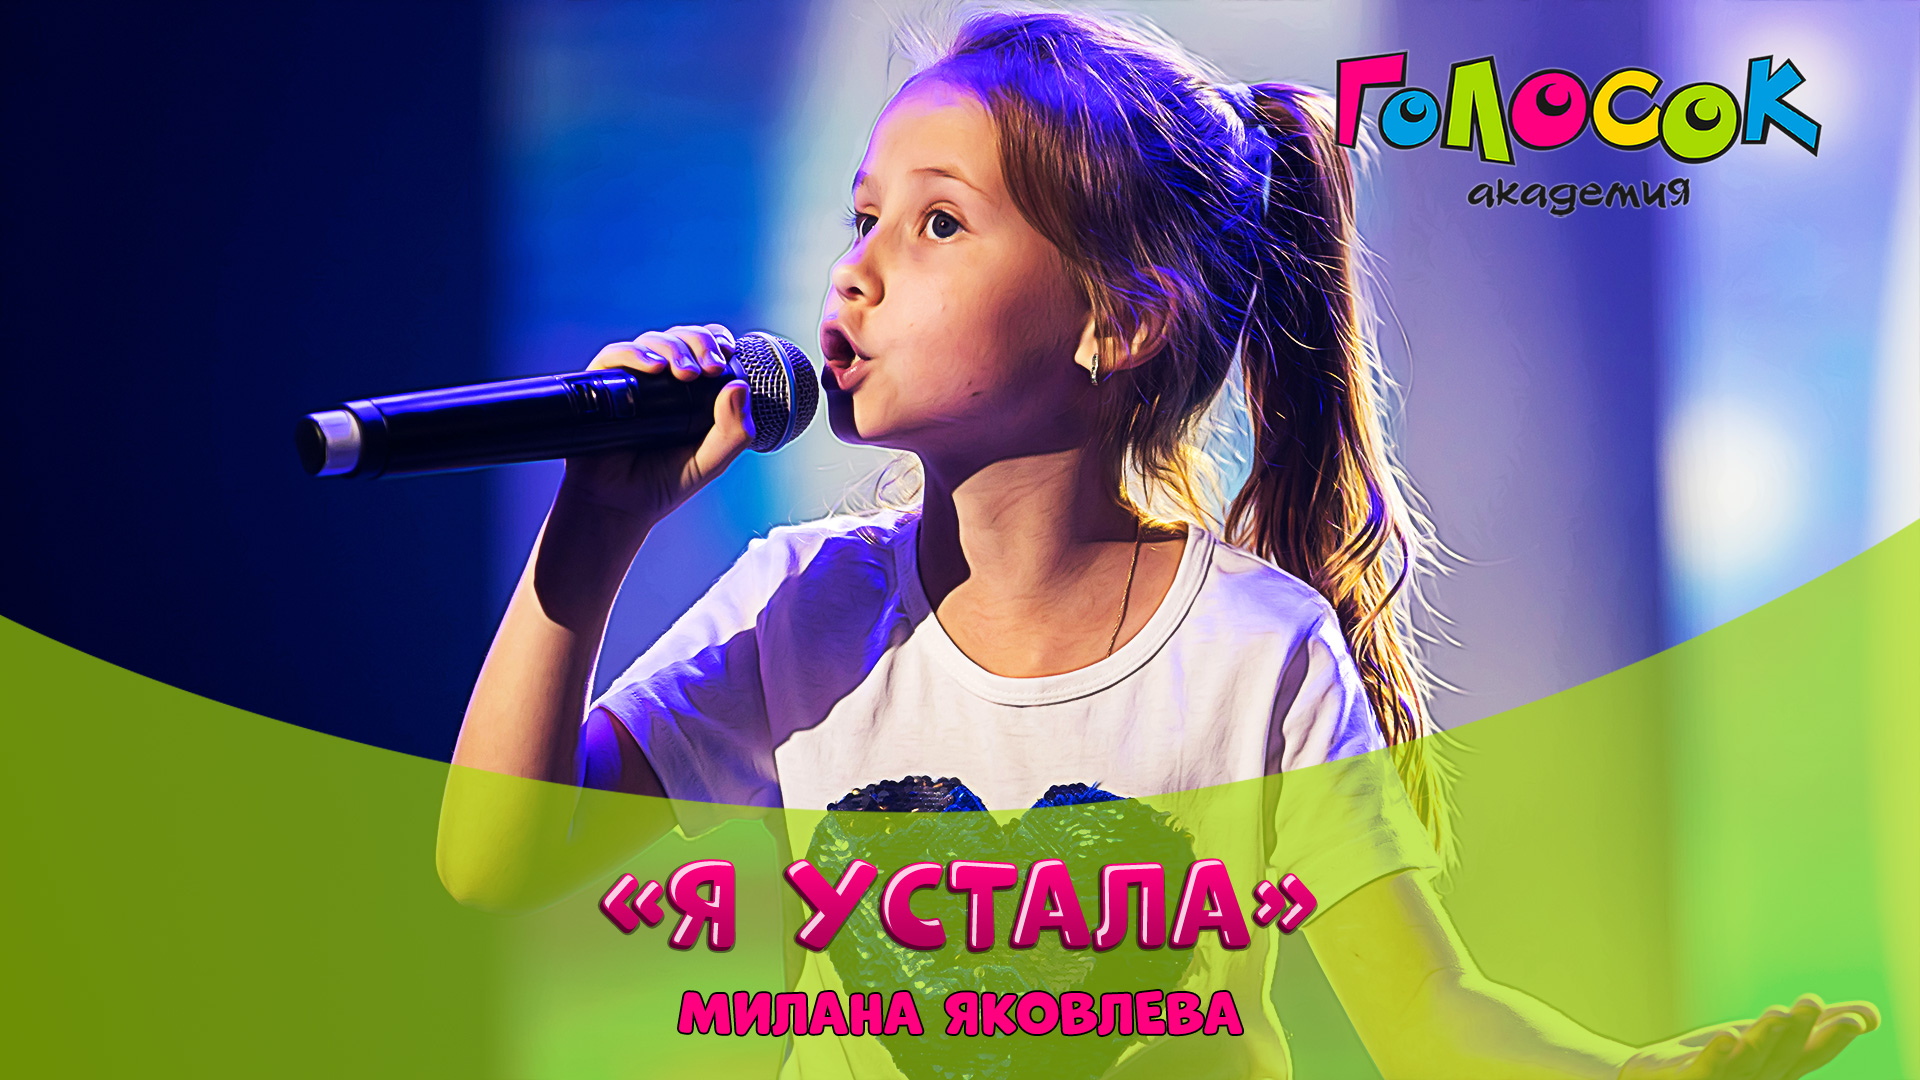 Детская песня - Я устала | Академия Голосок | Милана Яковлева (9 лет)